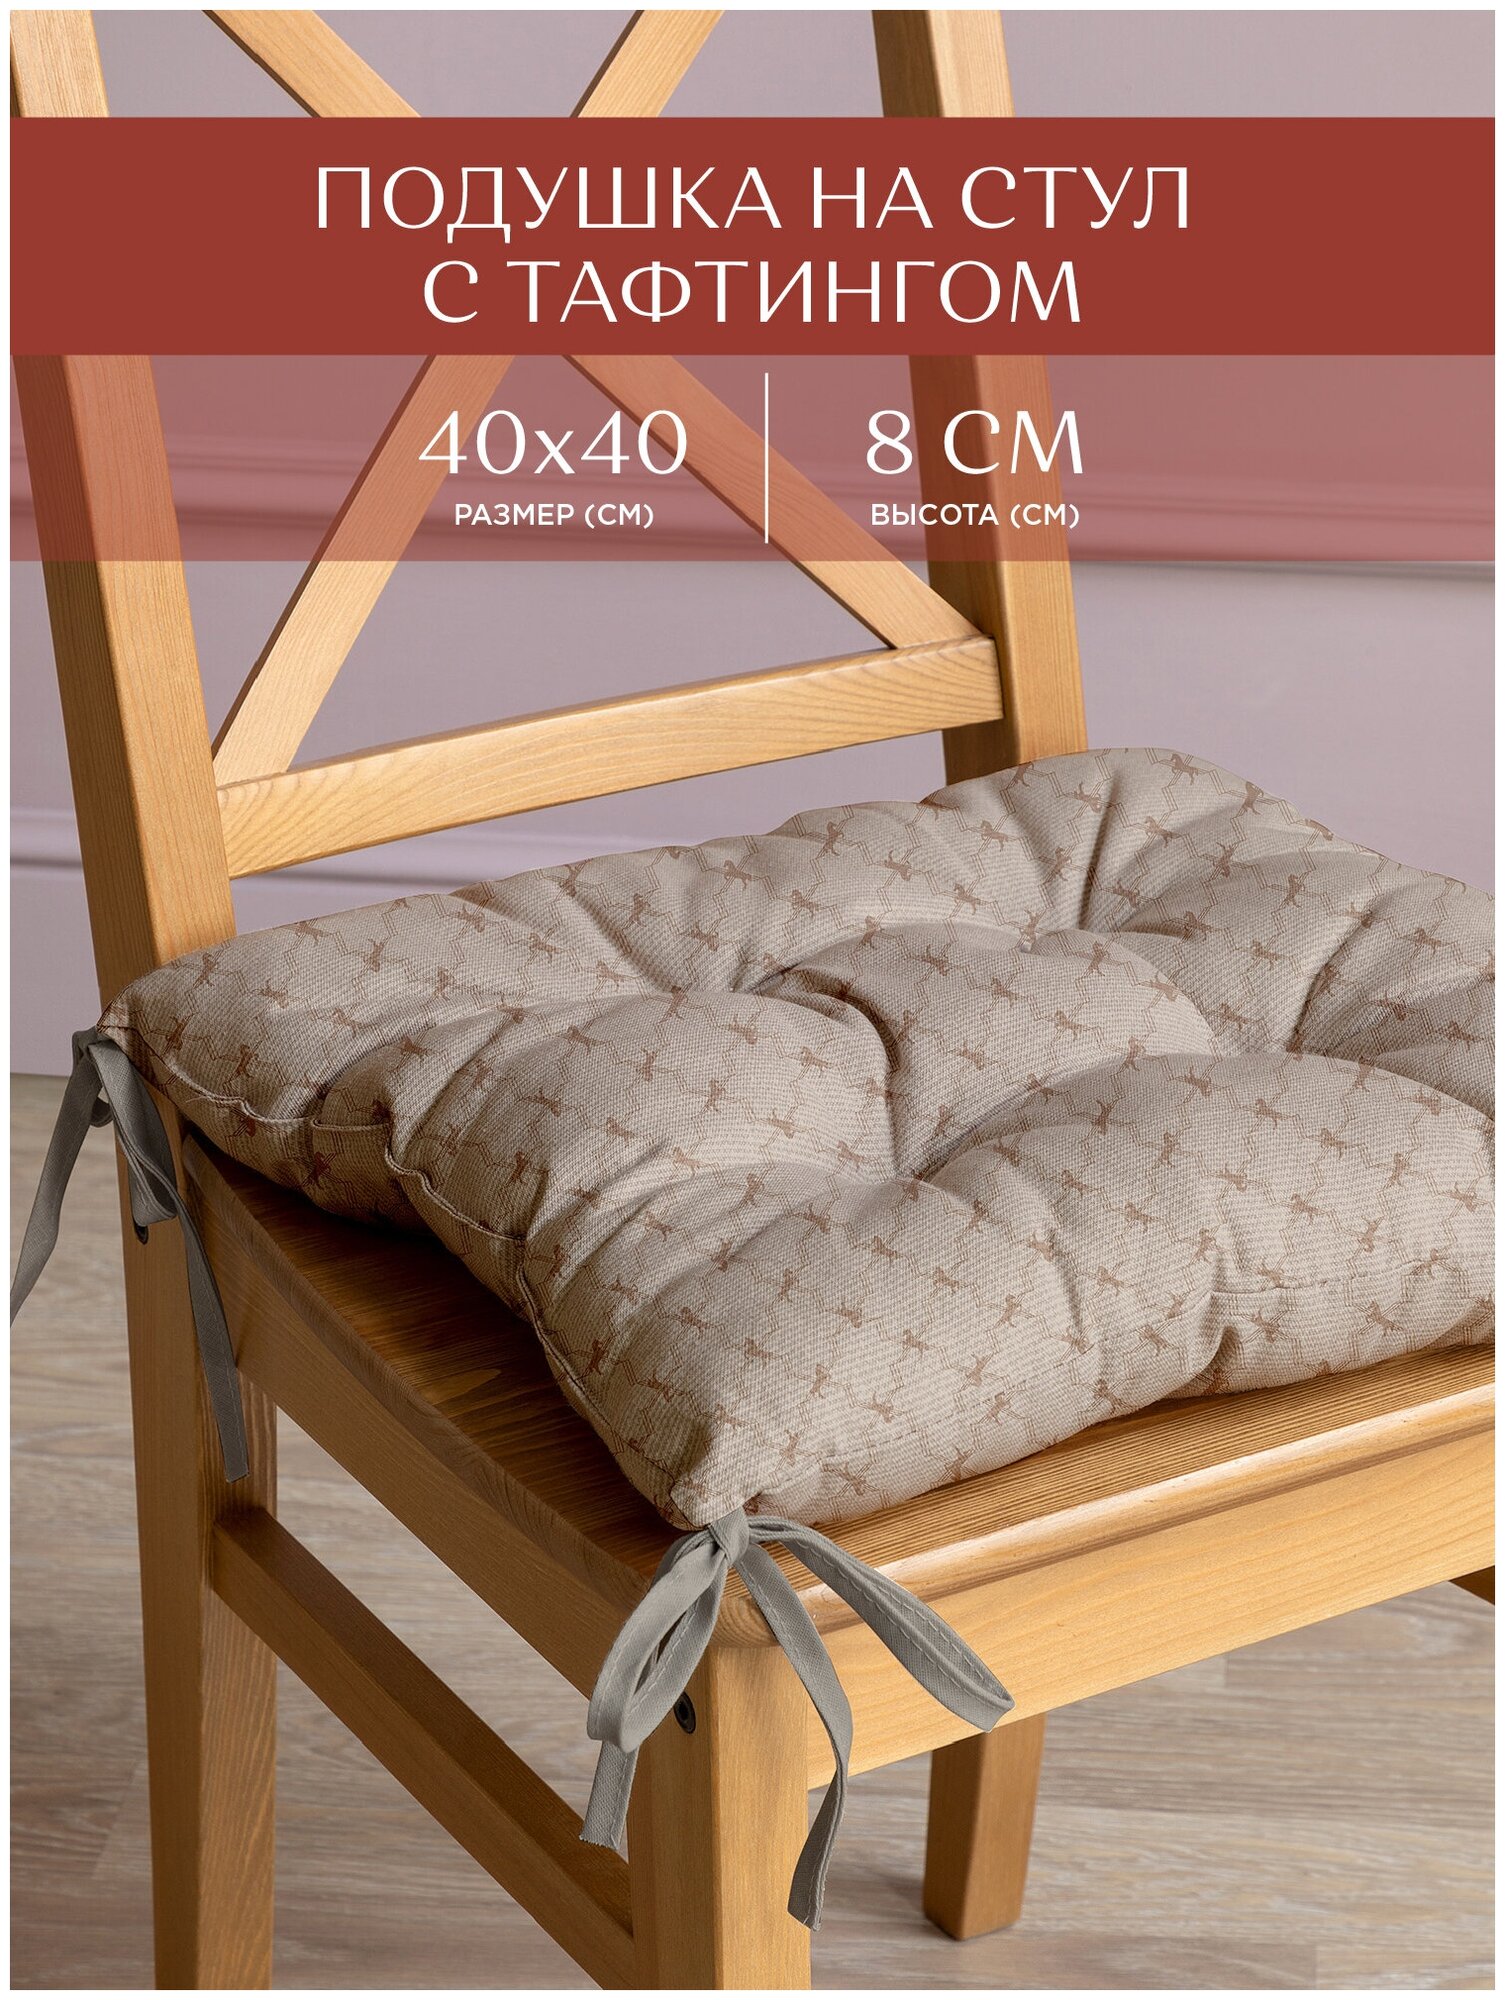 Подушка на стул с тафтингом квадратная 40х40 "Унисон" рис 33035-1 British Club